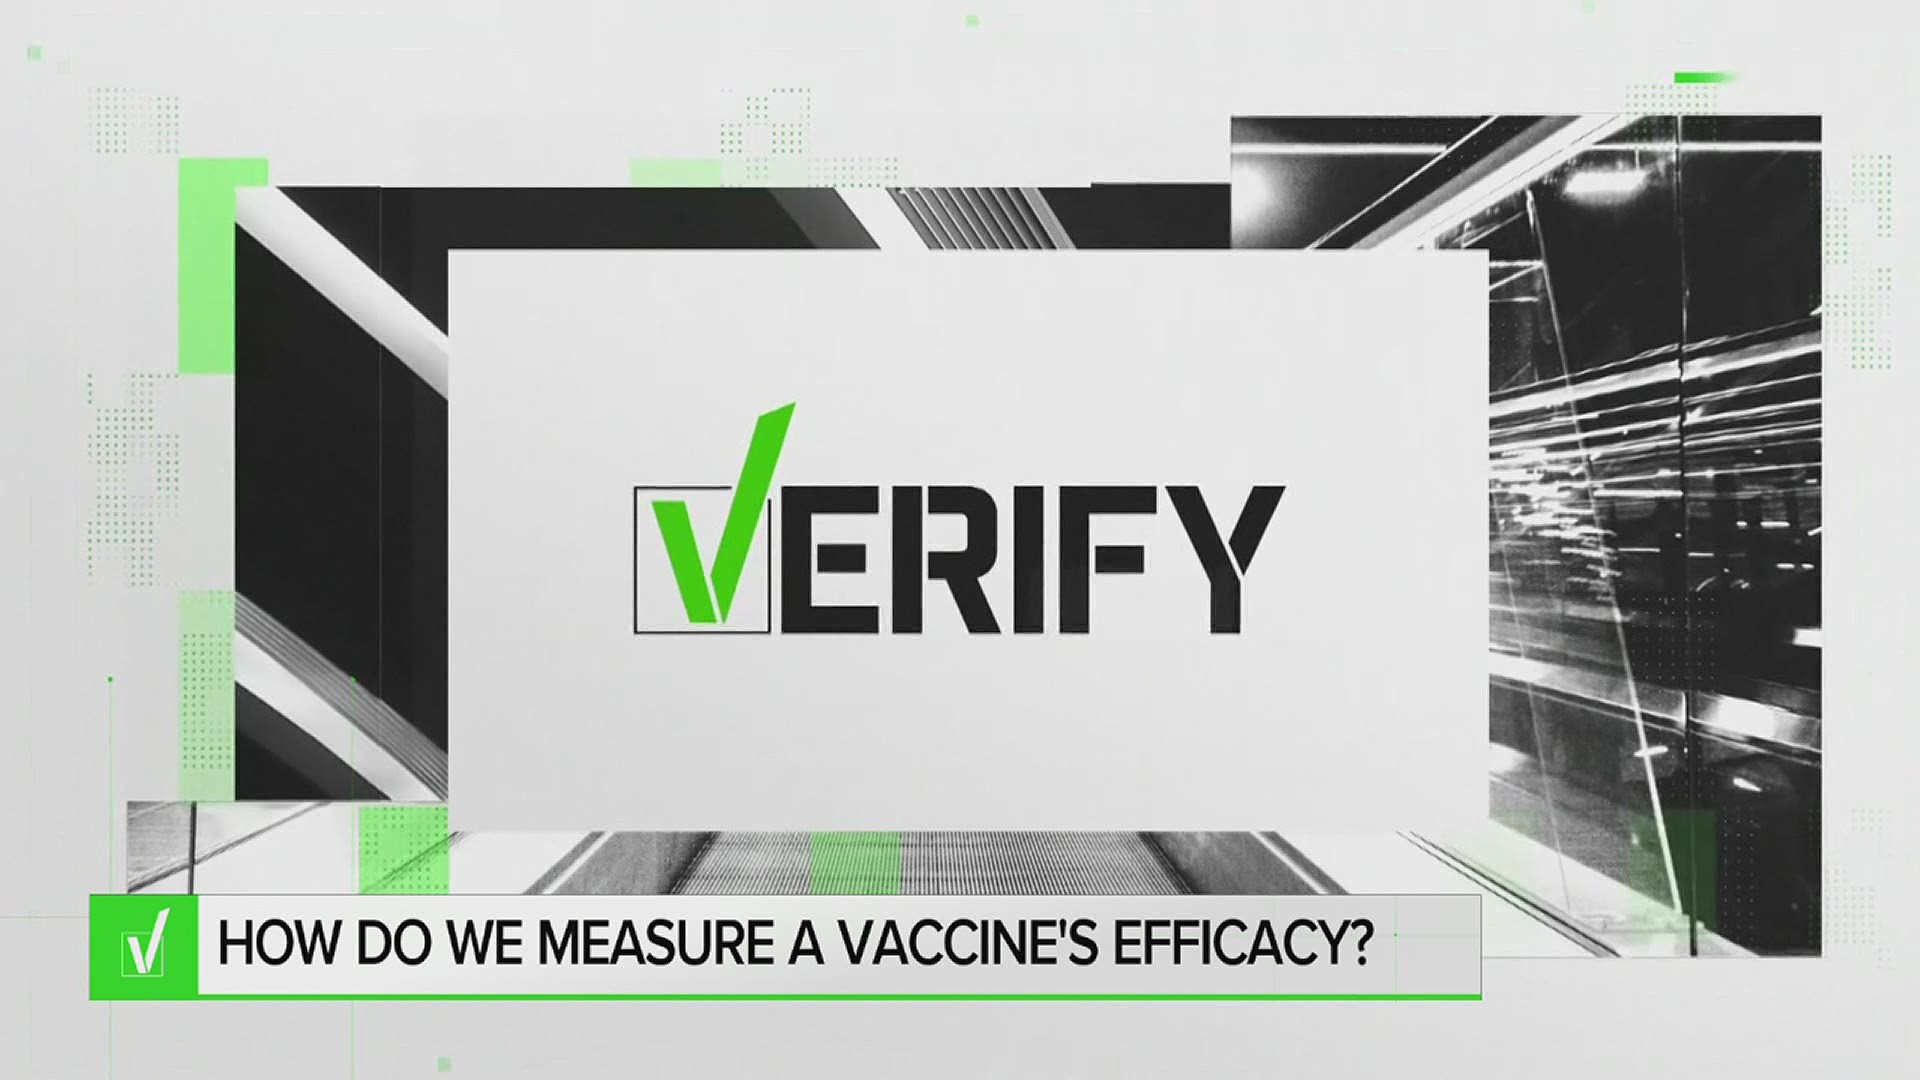 VERIFY: How do we measure a vaccine's efficacy?